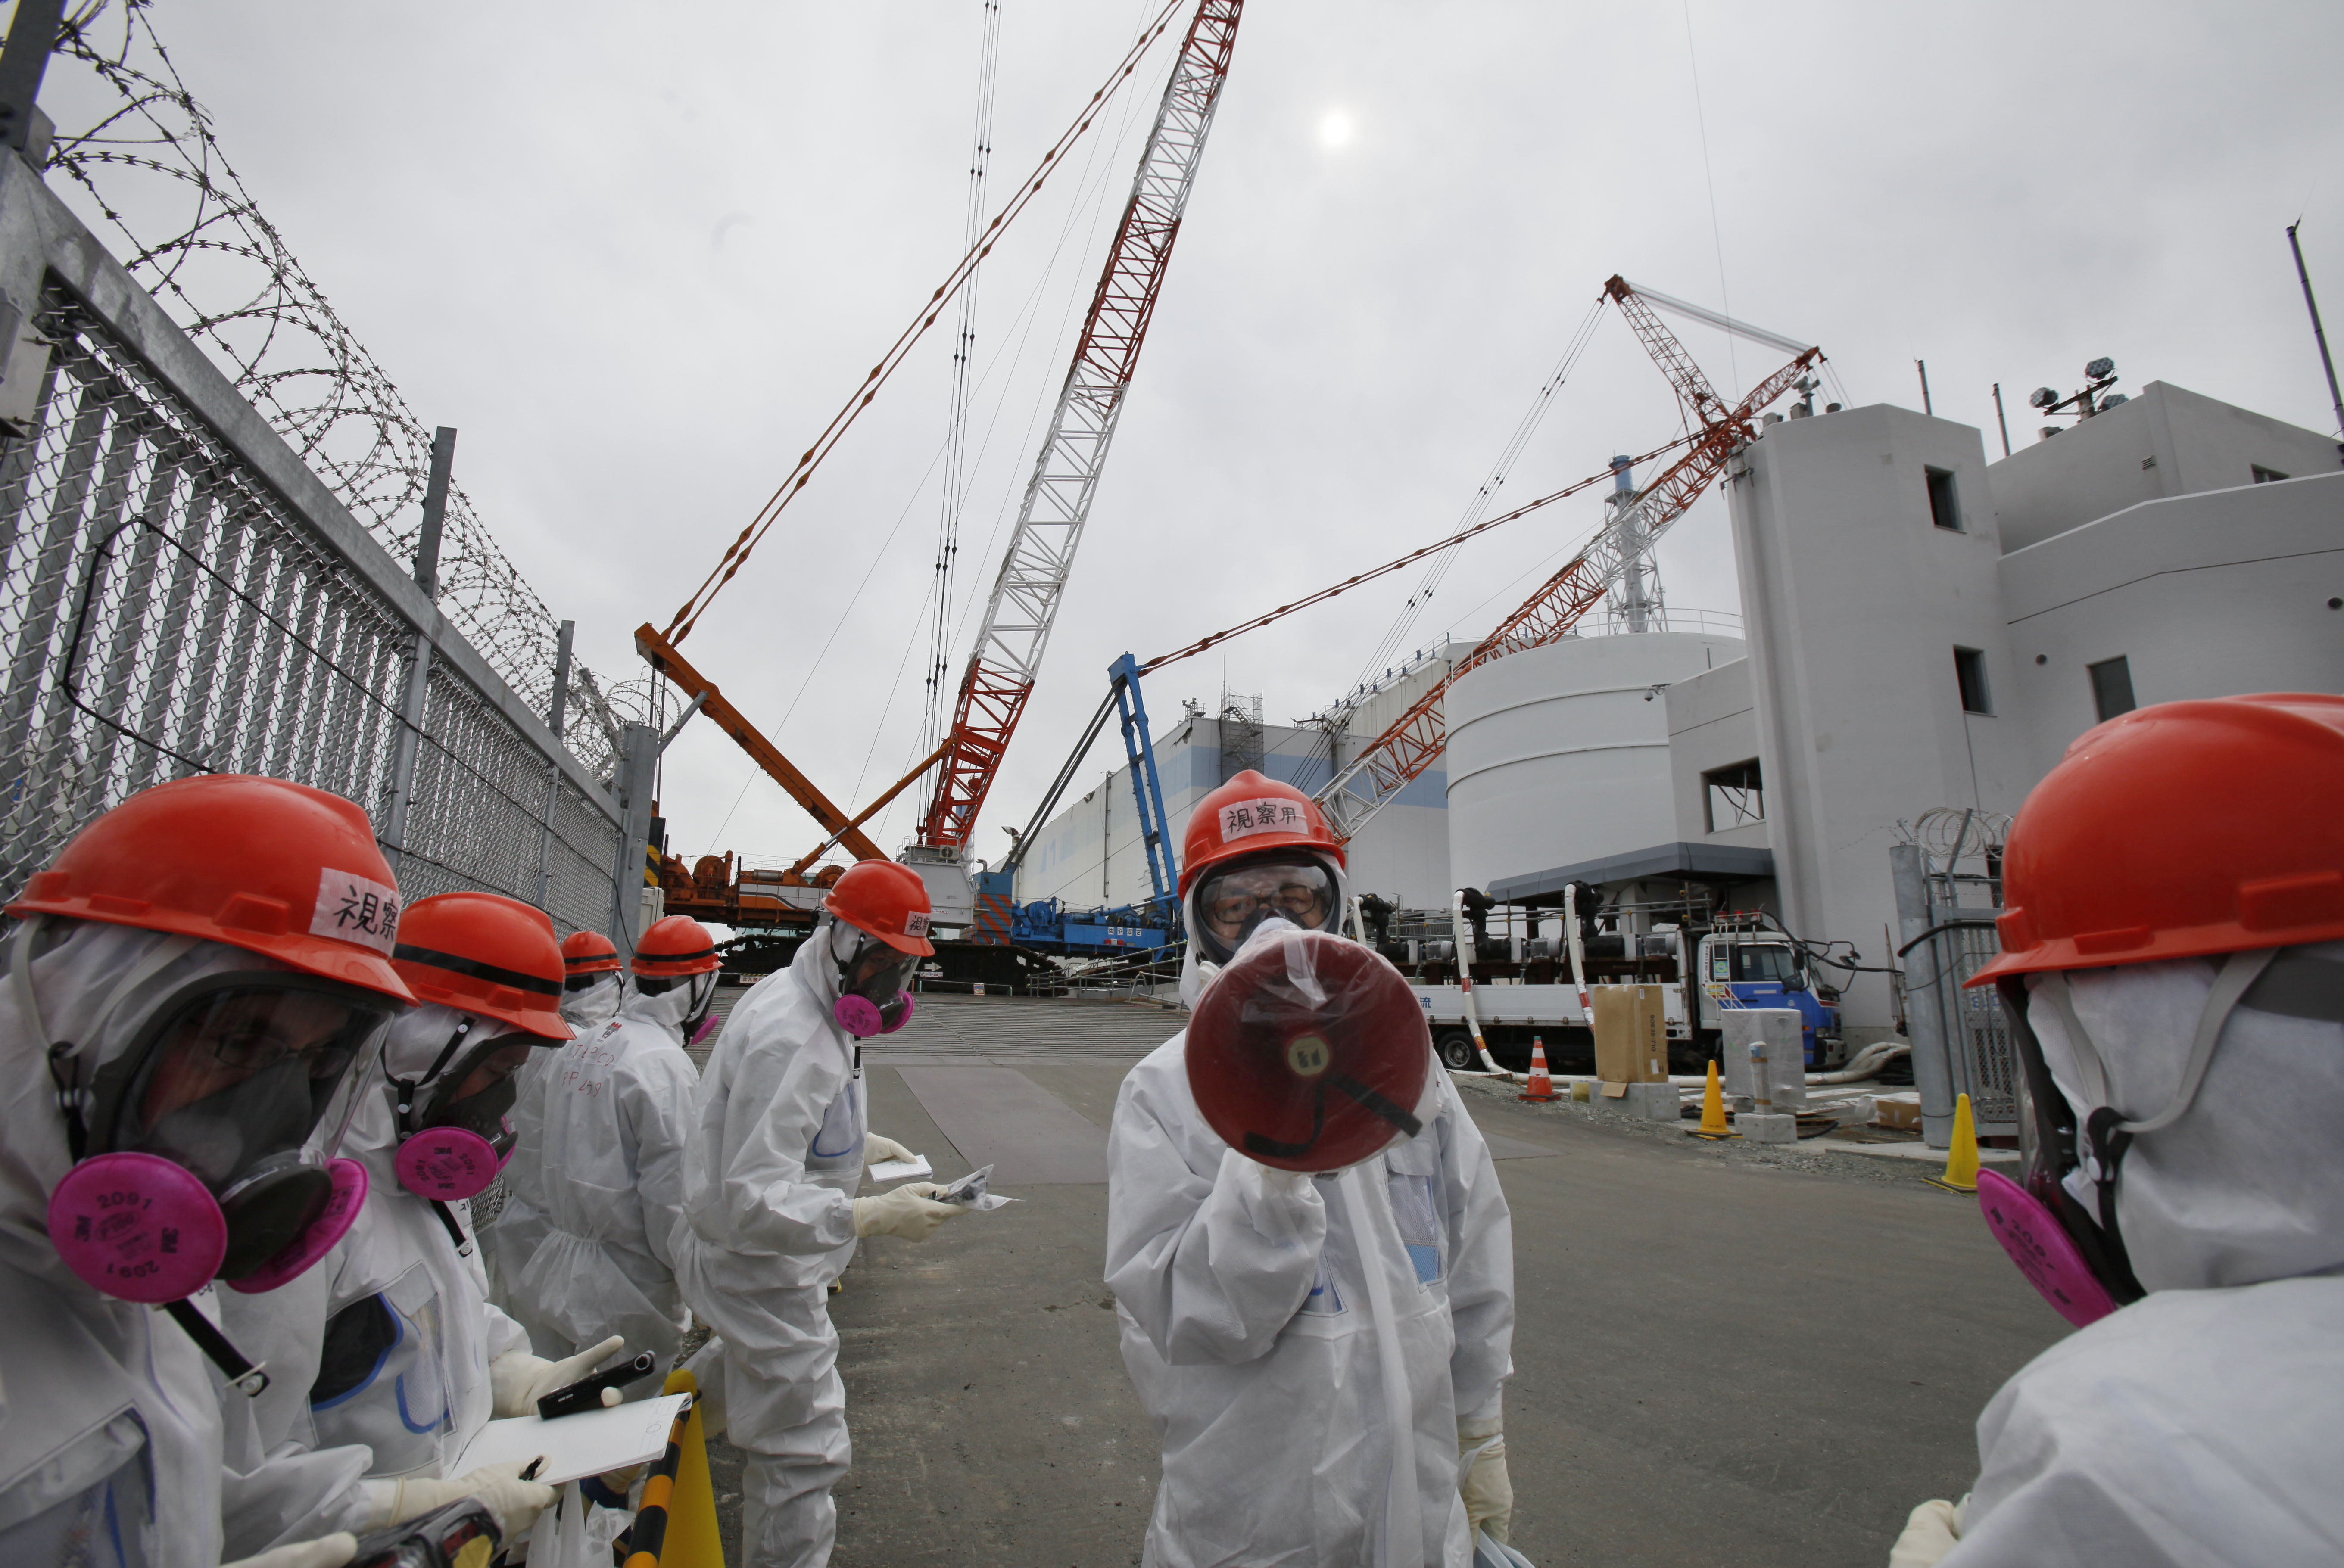 Авария на аэс в японии. АЭС Фукусима-1. Авария на АЭС Фукусима-1. Авария на АЭС Фукусима-1 (Япония).. Авария на АЭС Фукусима-1 (Япония, 2011)..